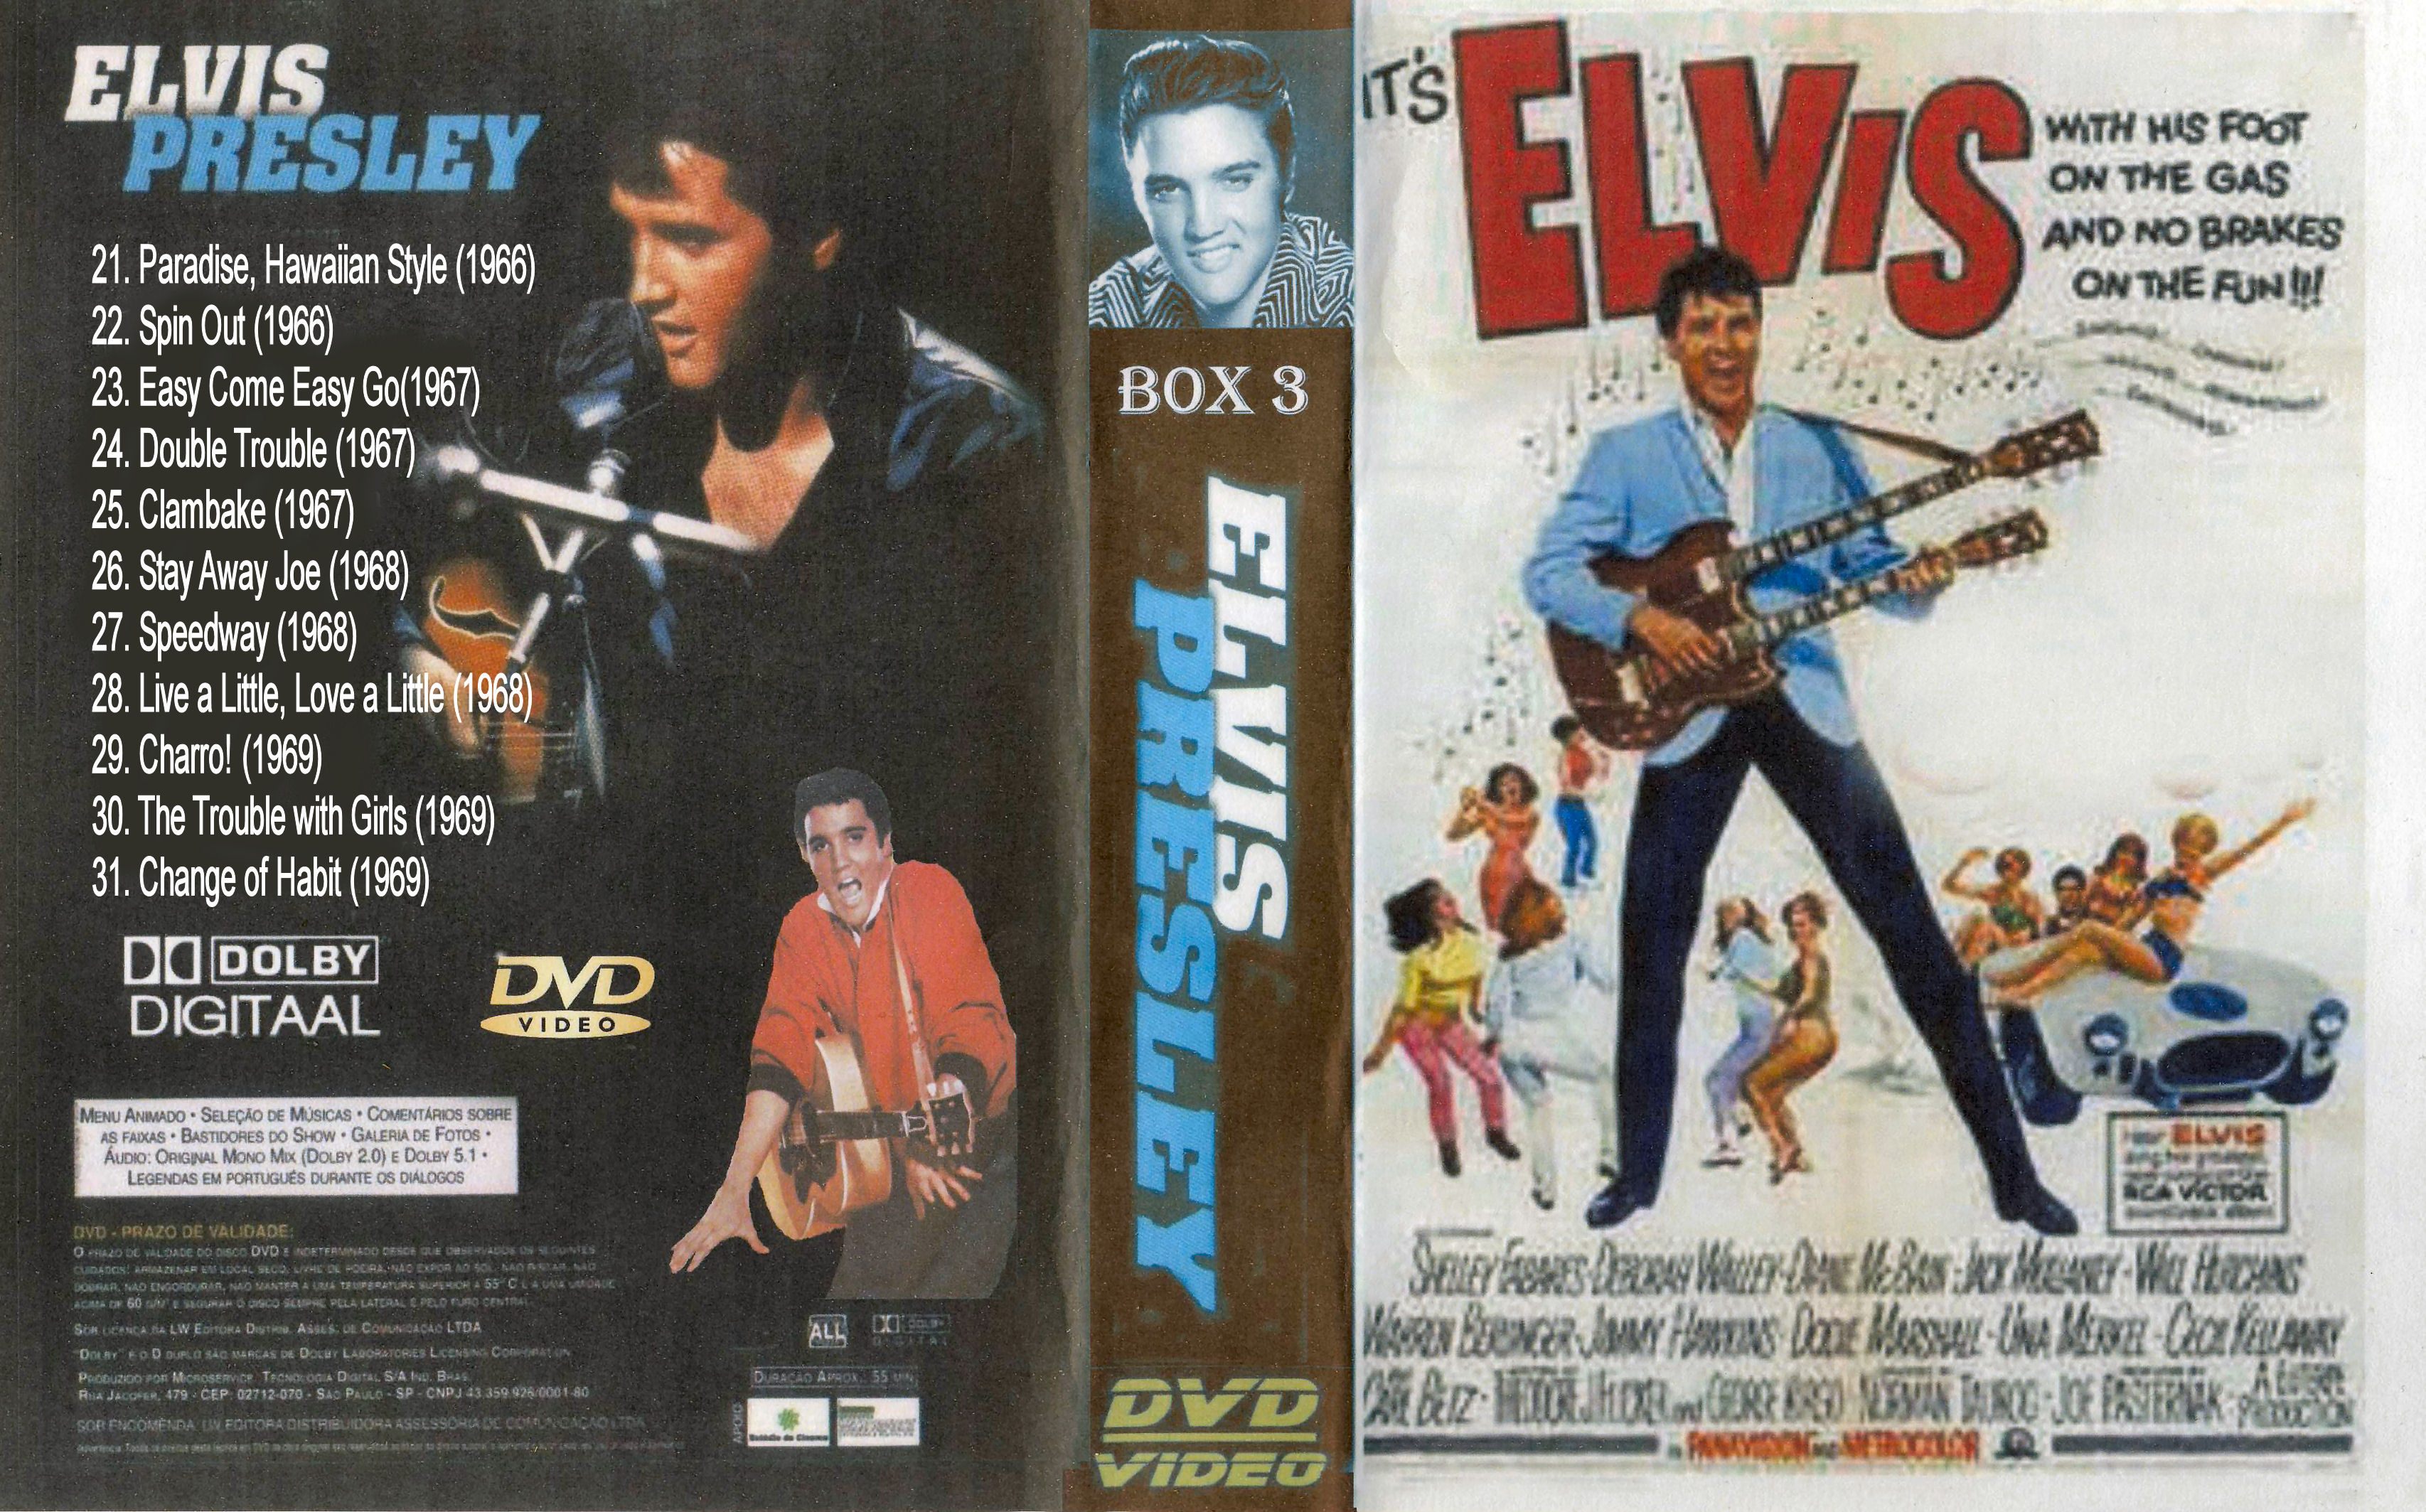 Elvis Collectie ( 30. The Trouble with Girls (1969) DvD 30 van 31